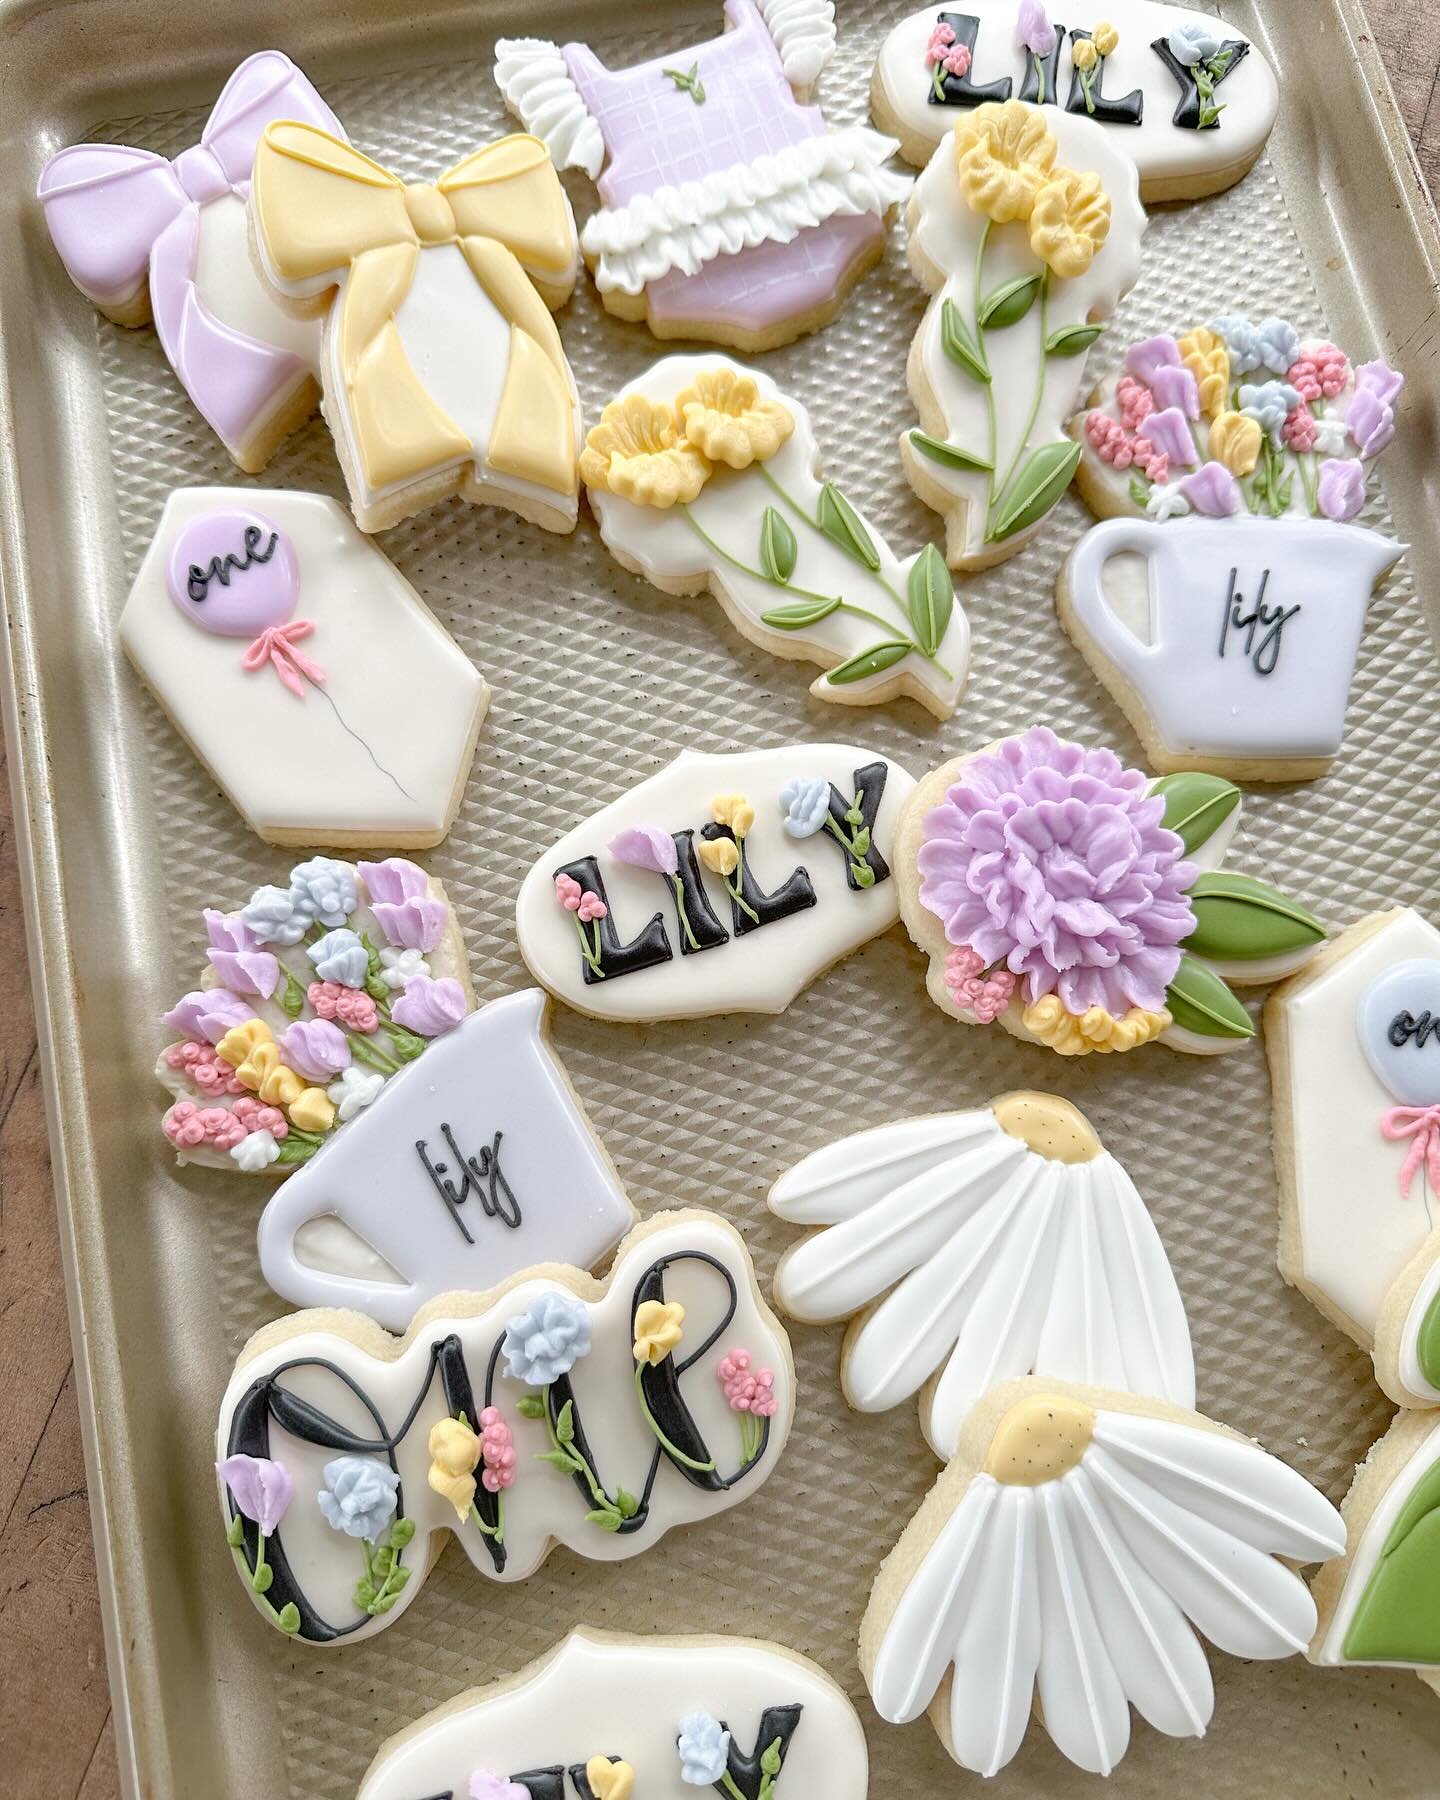 Lily is a wild ONE! 

#customcookies #bessiebales #decoratedcookies #flowercookies #birthday #houston #wildflowers